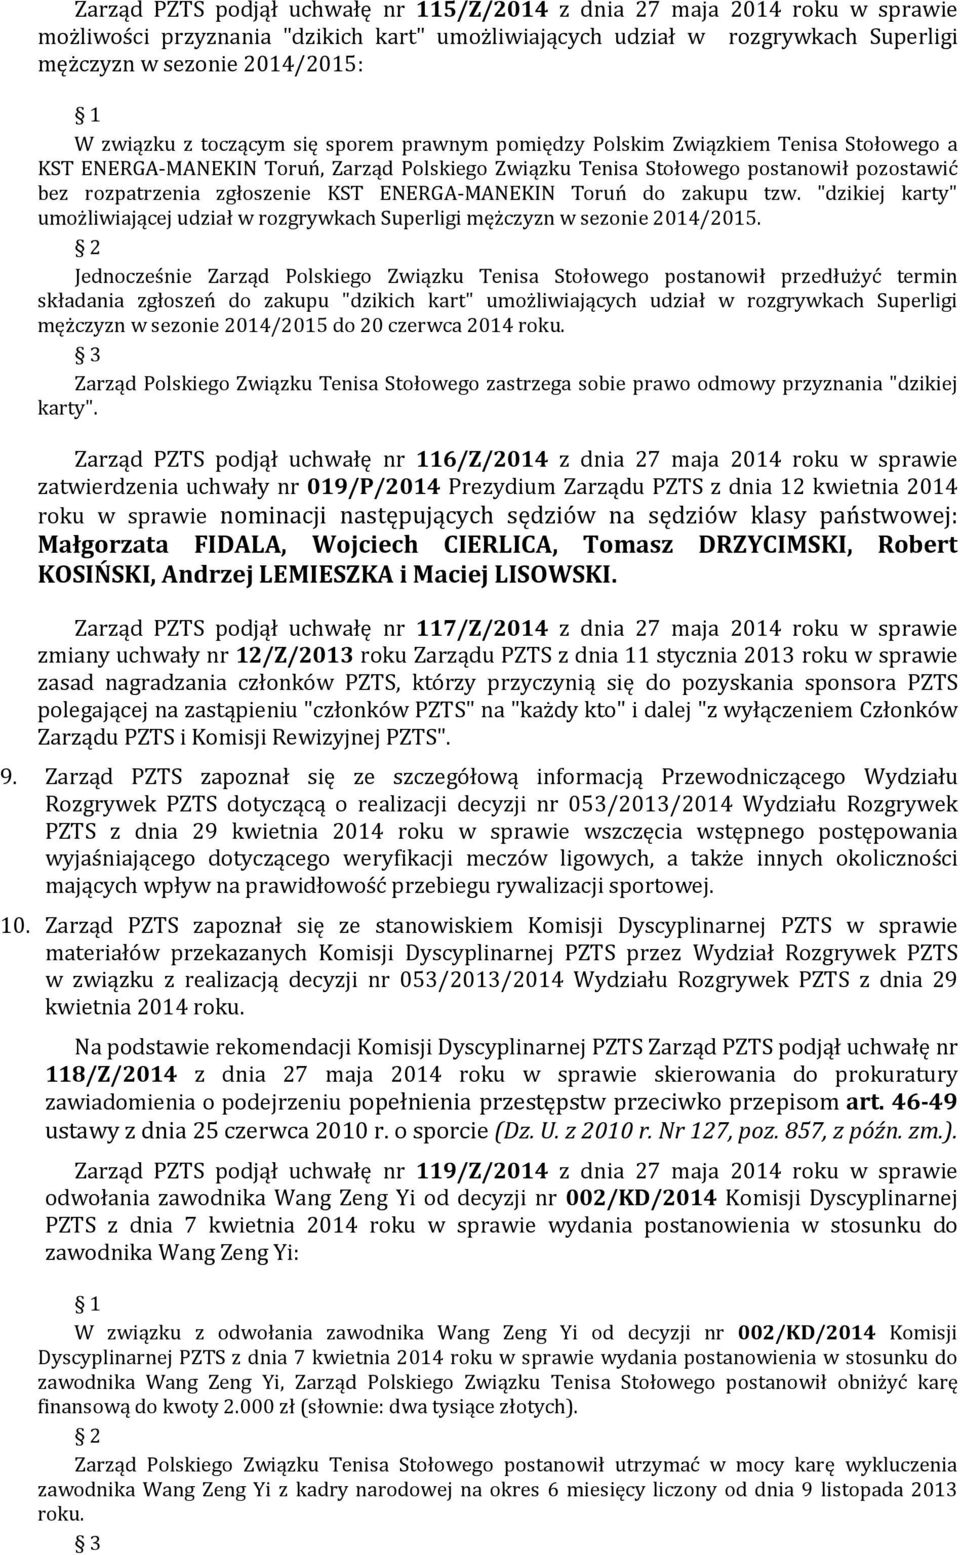 zgłoszenie KST ENERGA-MANEKIN Toruń do zakupu tzw. "dzikiej karty" umożliwiającej udział w rozgrywkach Superligi mężczyzn w sezonie 2014/2015.